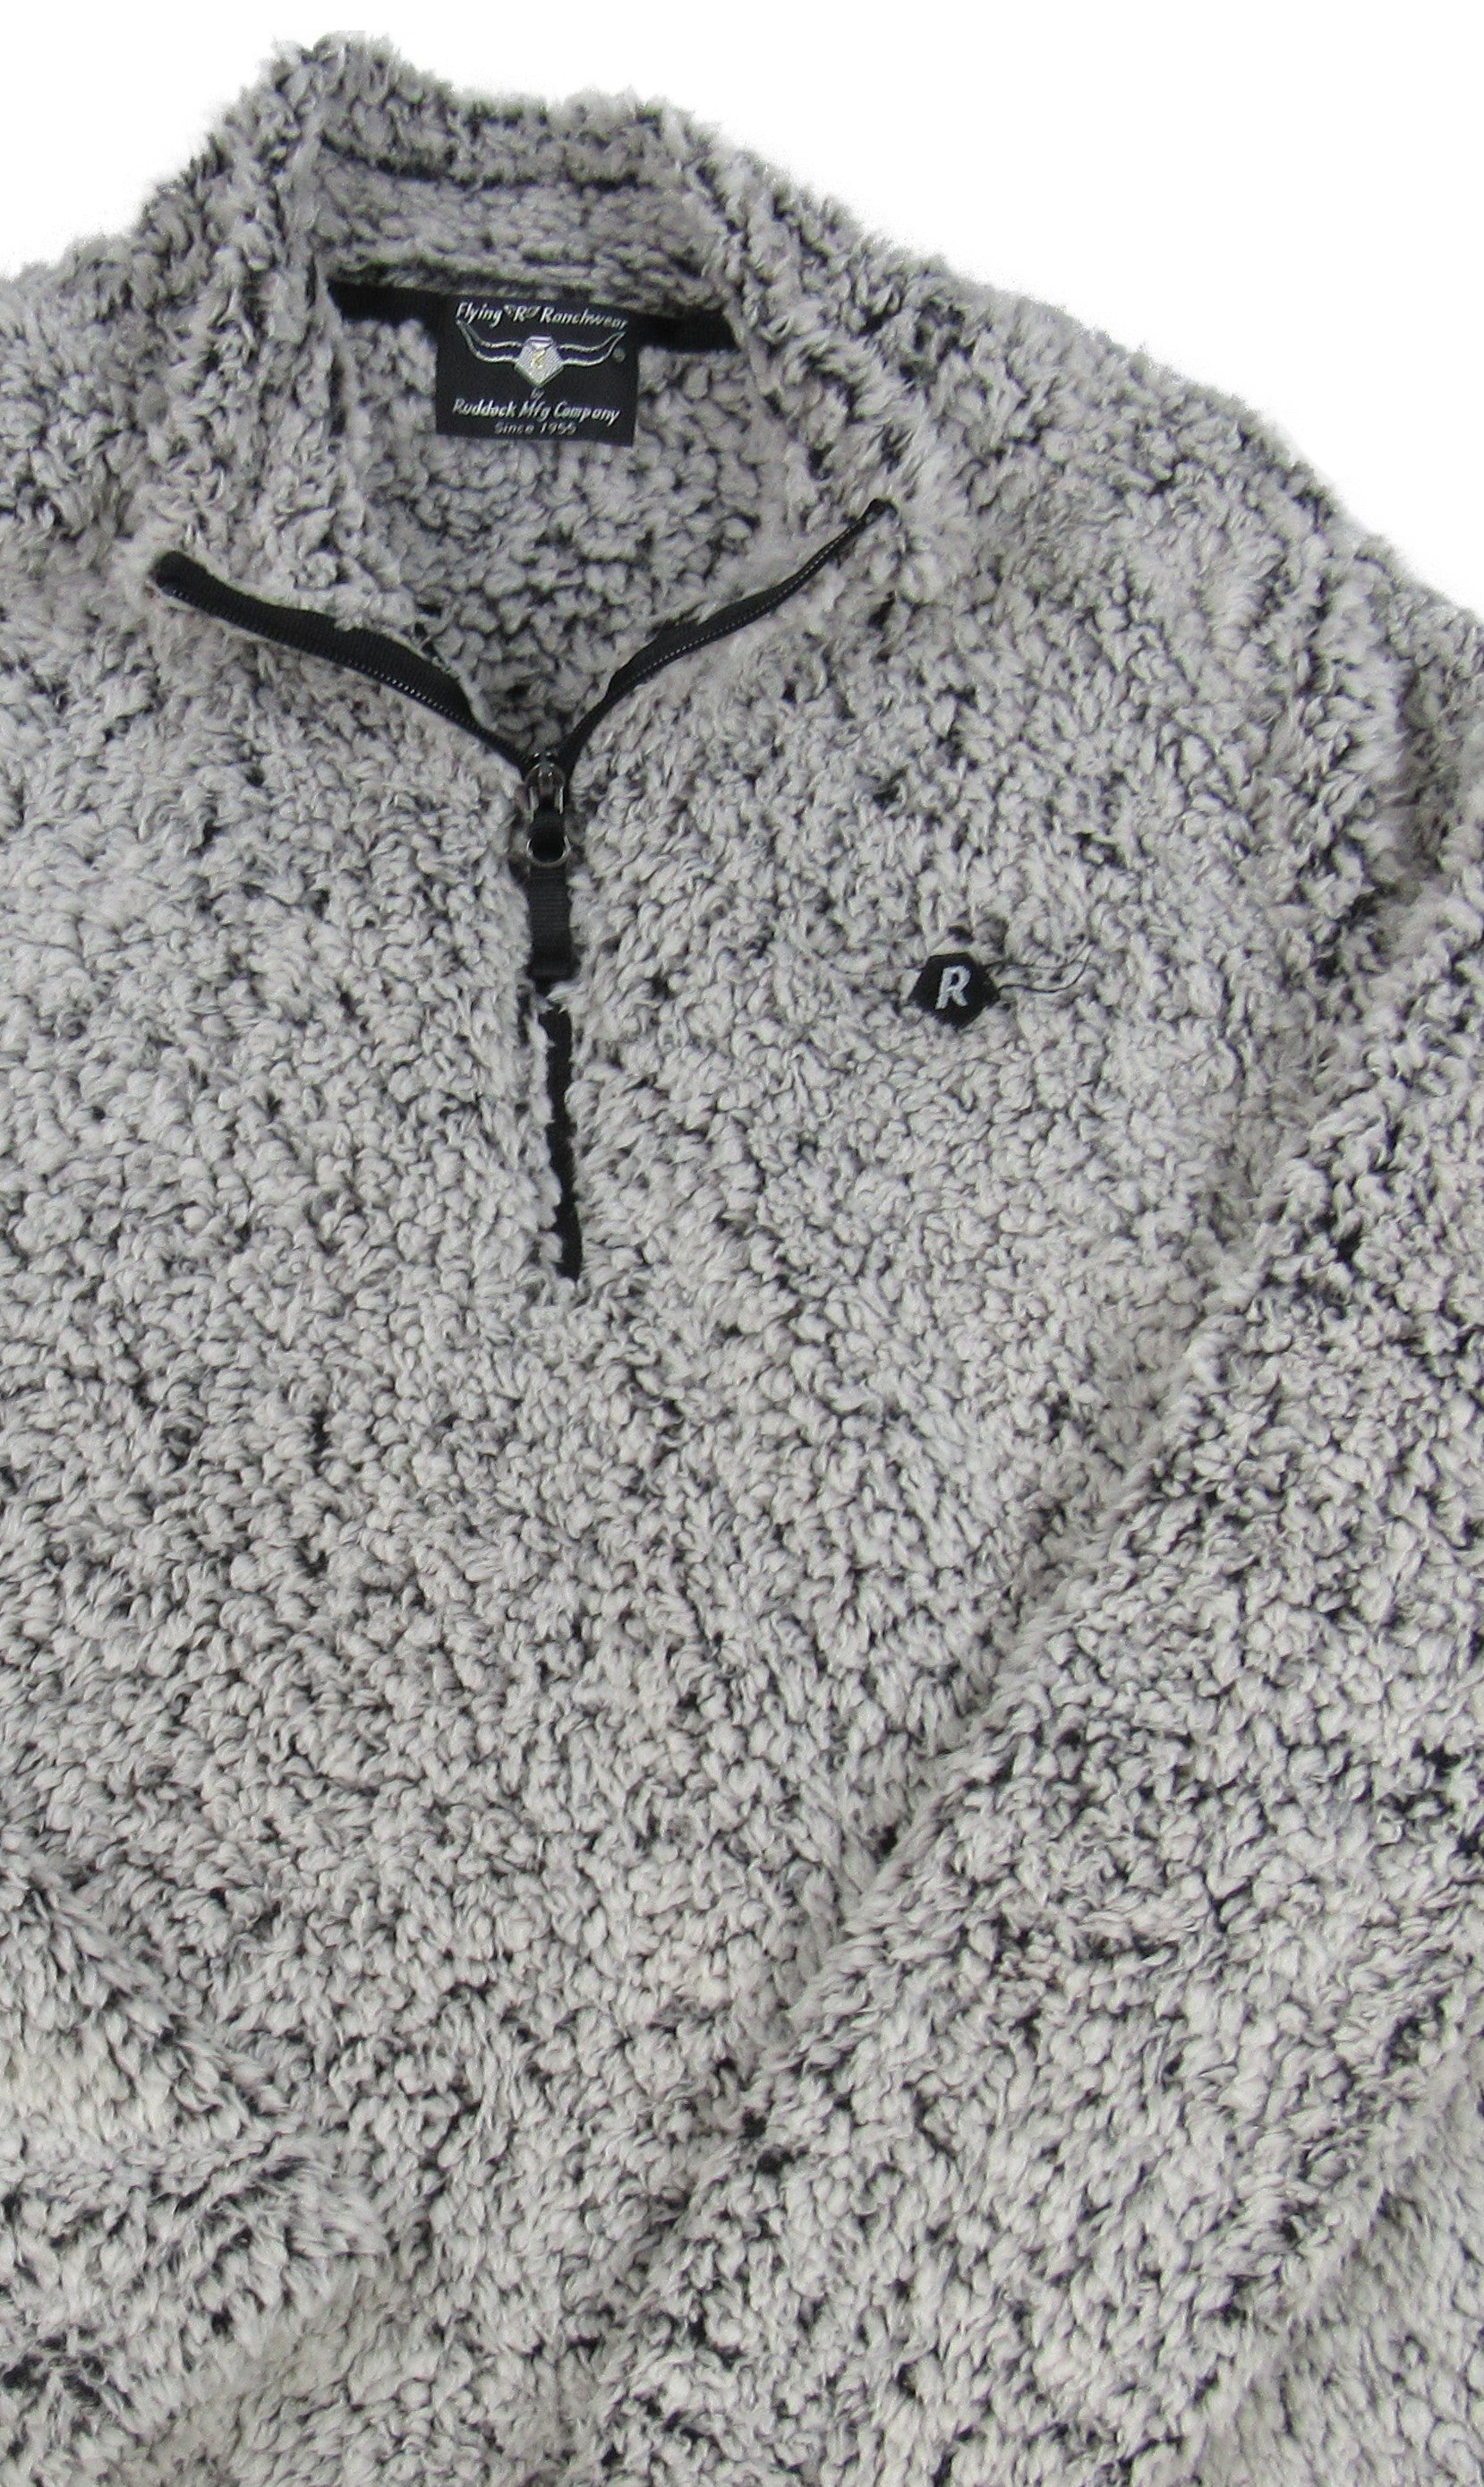 Gray Heather sherpa fleece with 1/4 zipper by Flying R Ranchwear